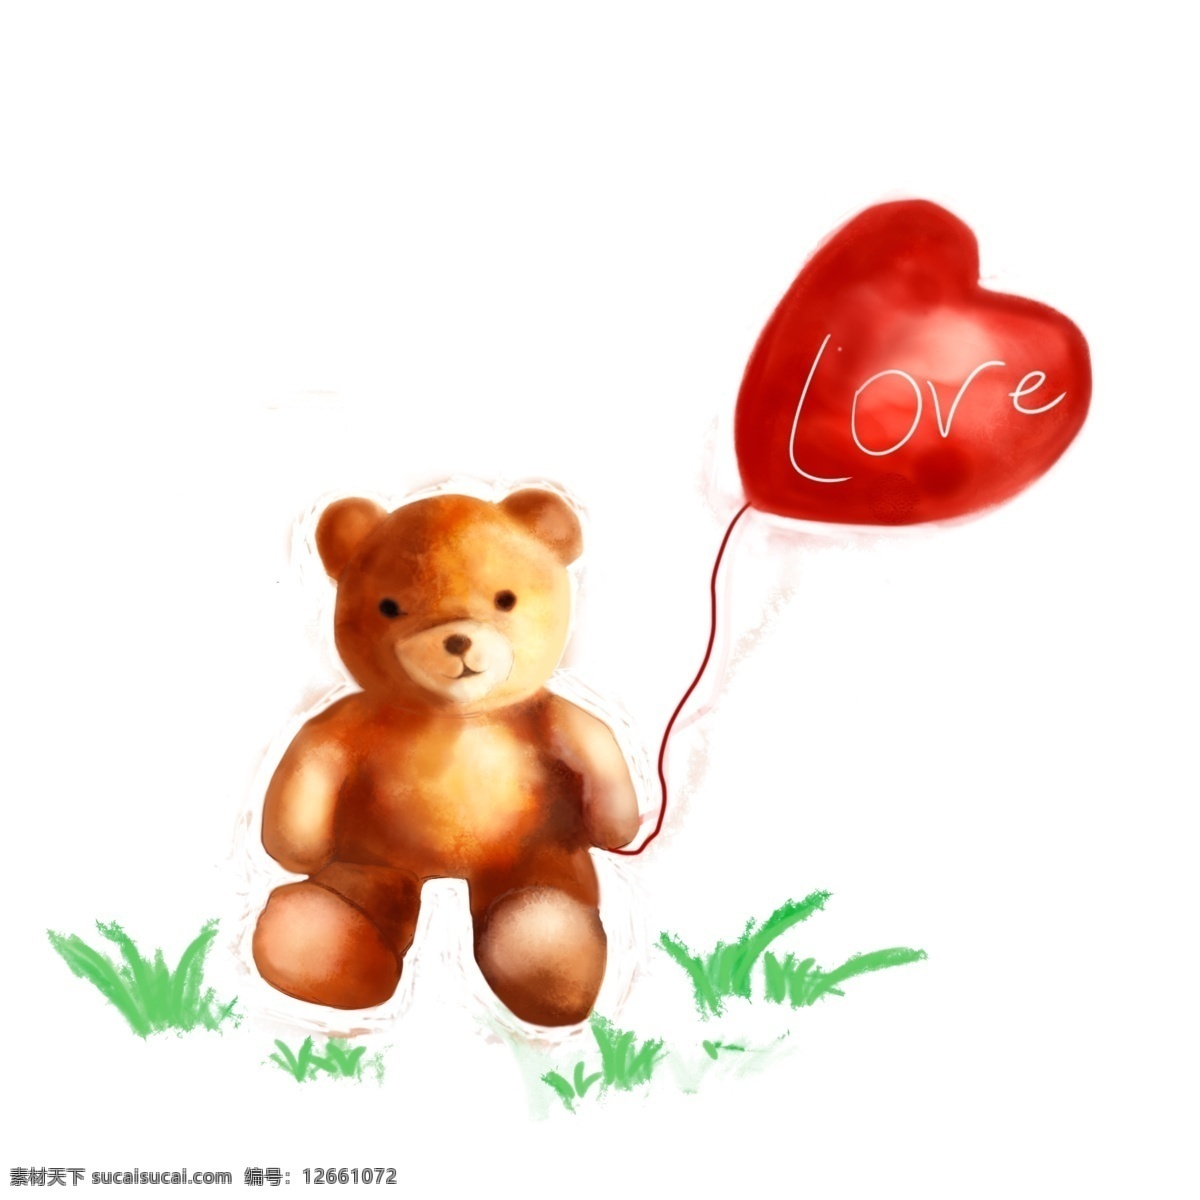 手绘 水彩 风格 玩具 熊 可爱 玩具熊 爱情 爱心 气球 童年回忆 毛茸茸